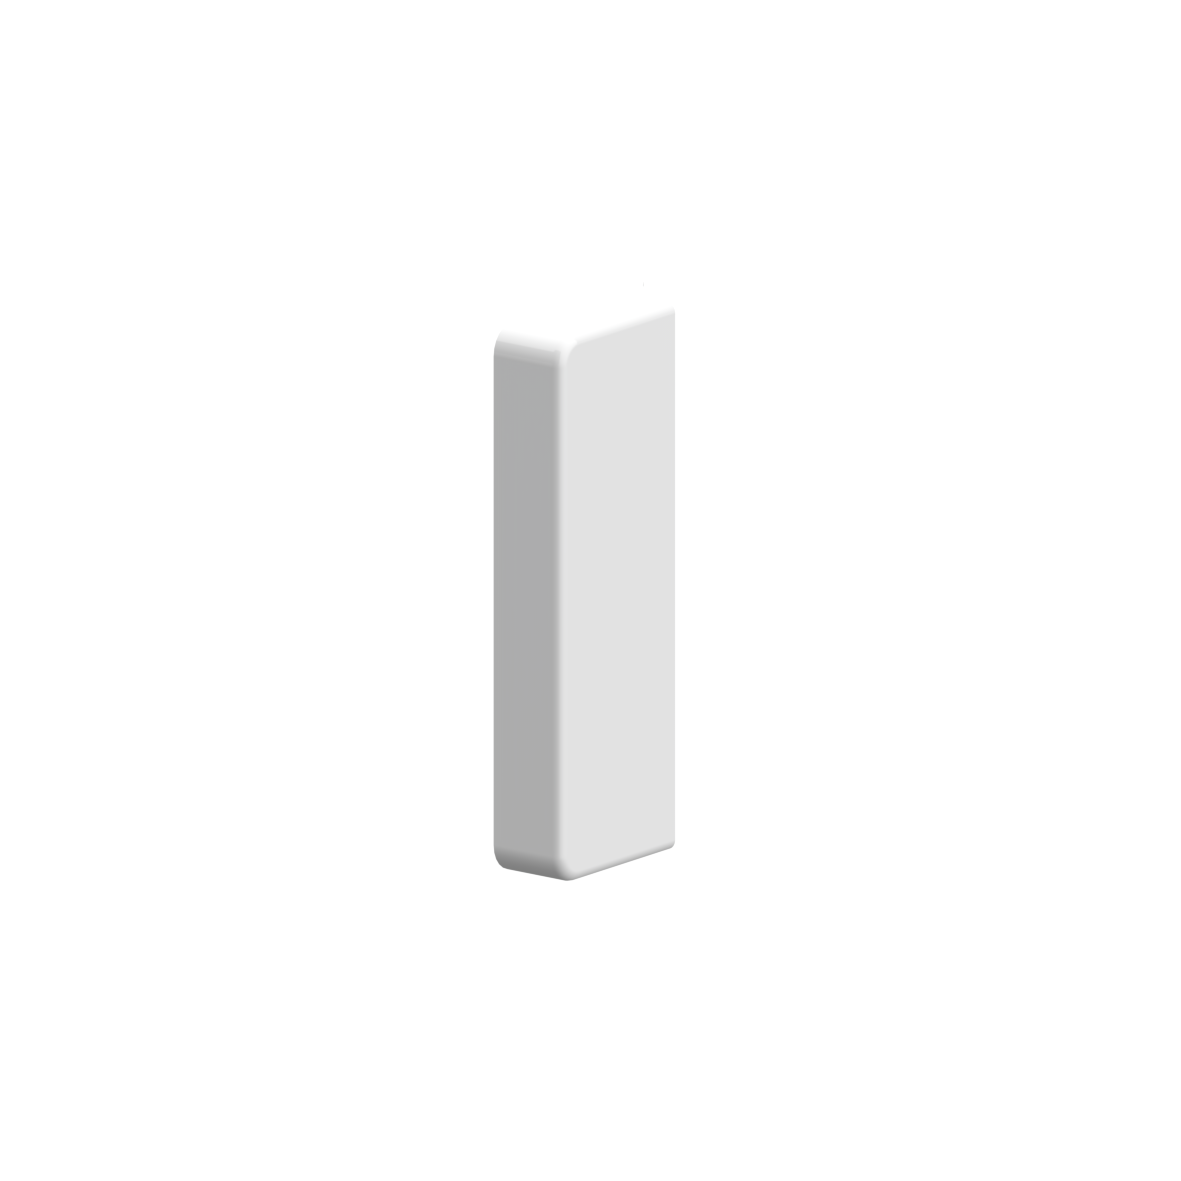 Nylon Door hinge cover NY.TB 78/82, 75 x 30 x 12 mm, White